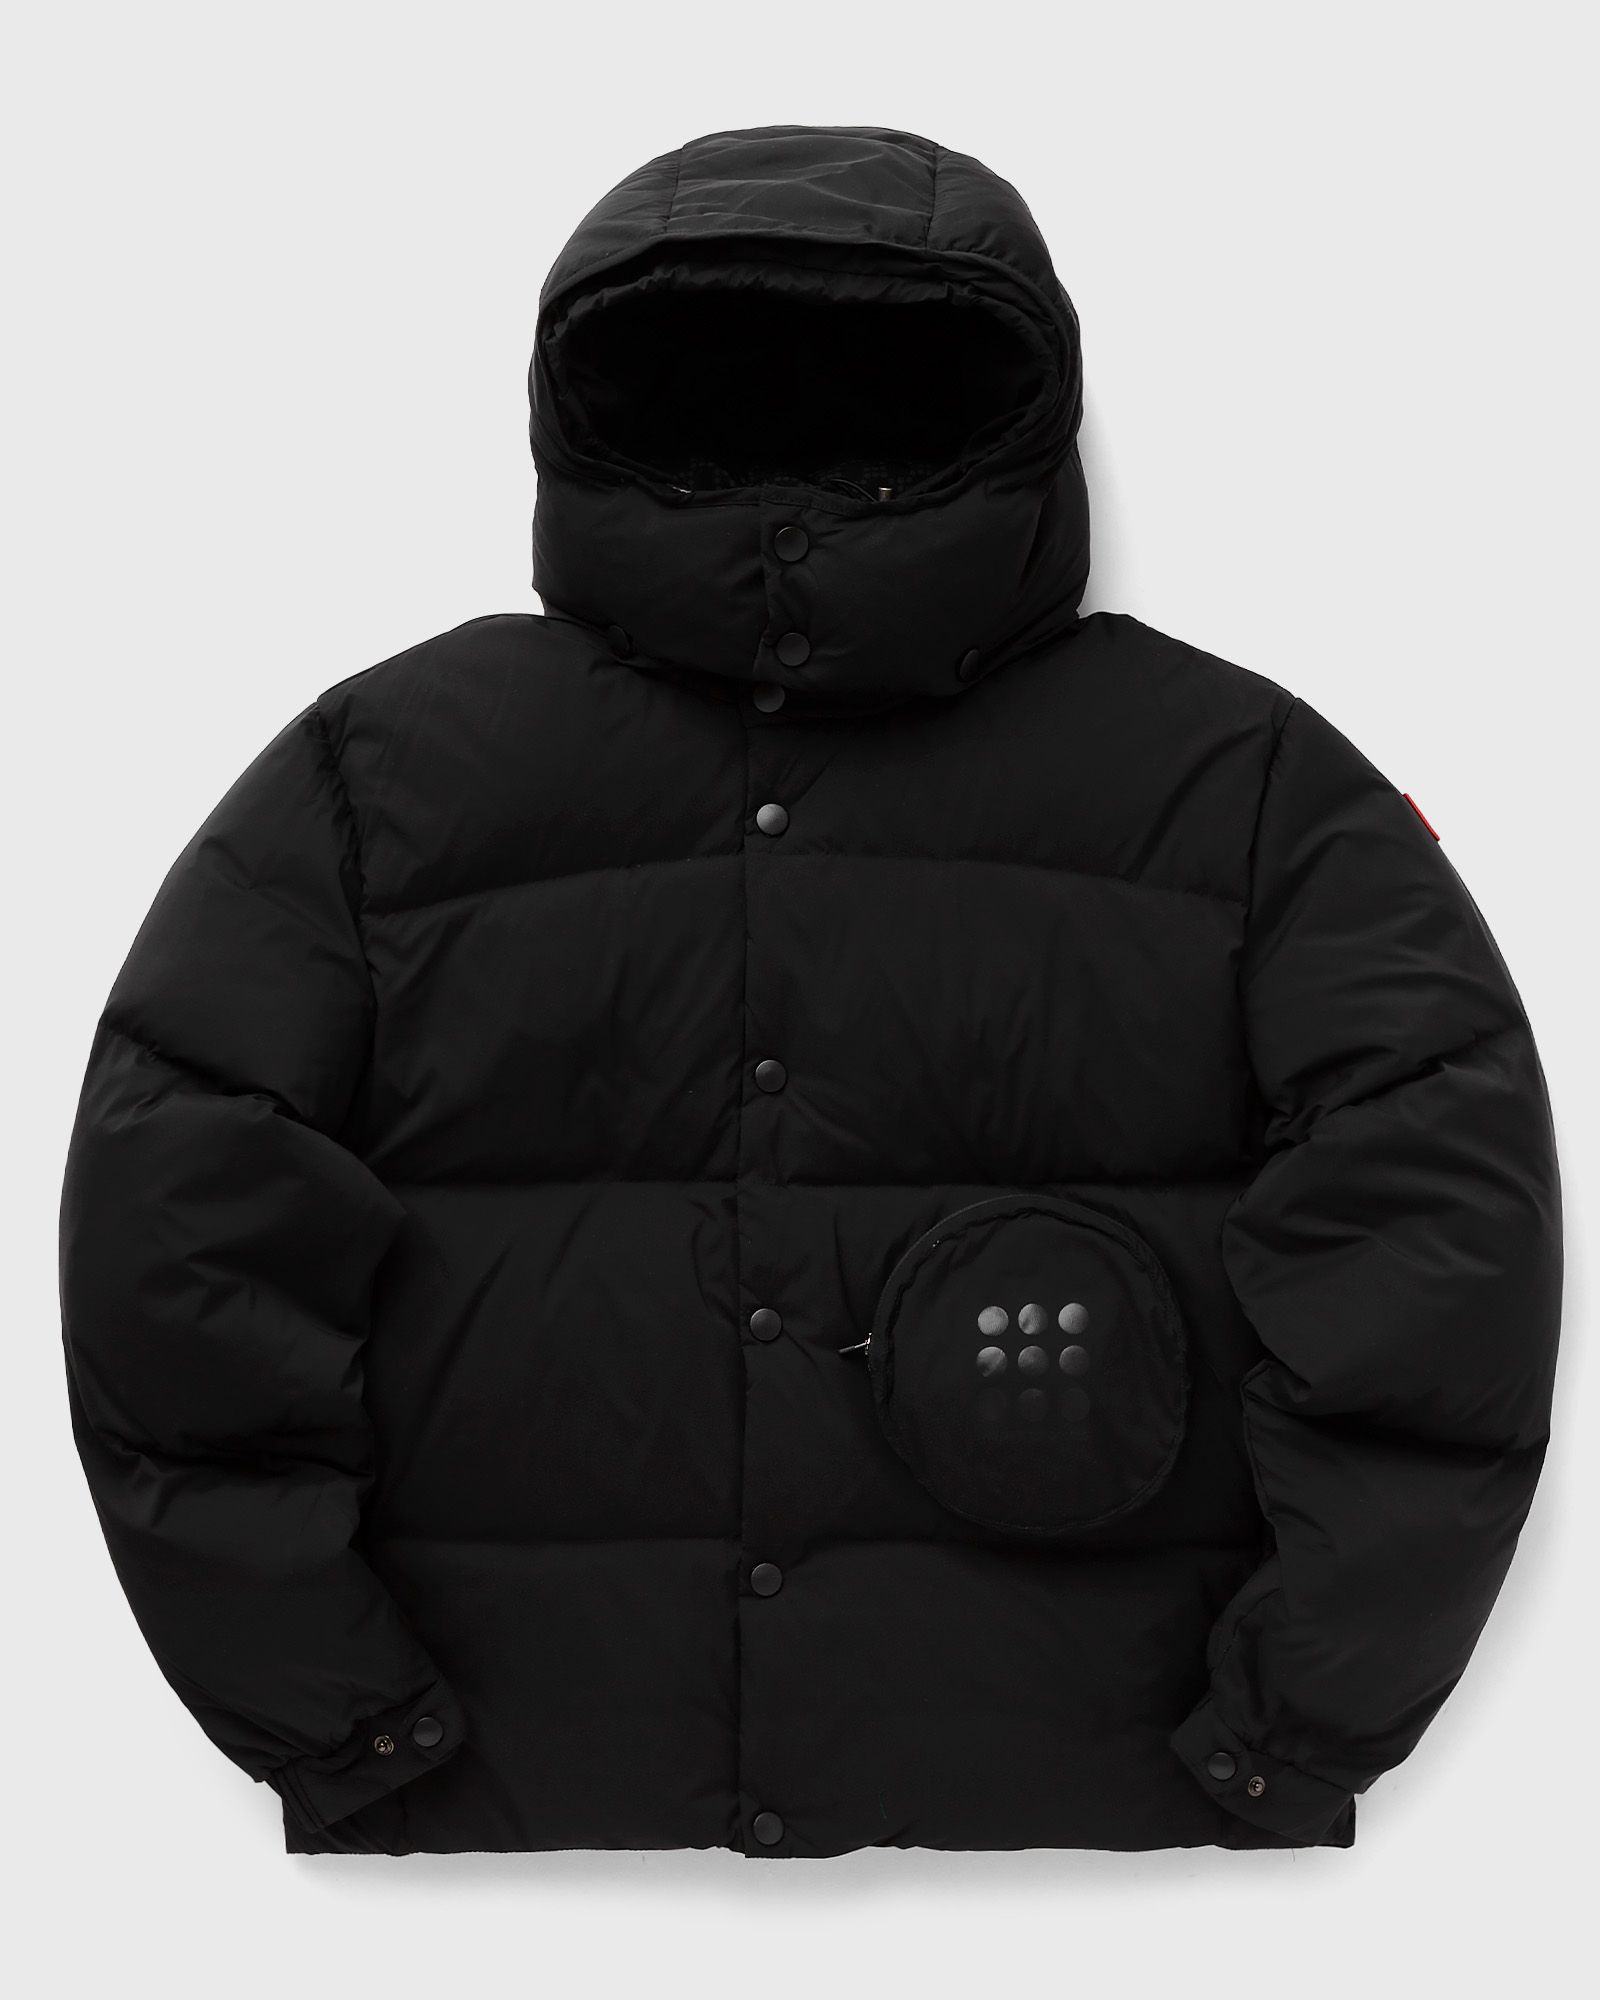 The New Originals - walkman puffer jacket men down & puffer jackets black in größe:xxl